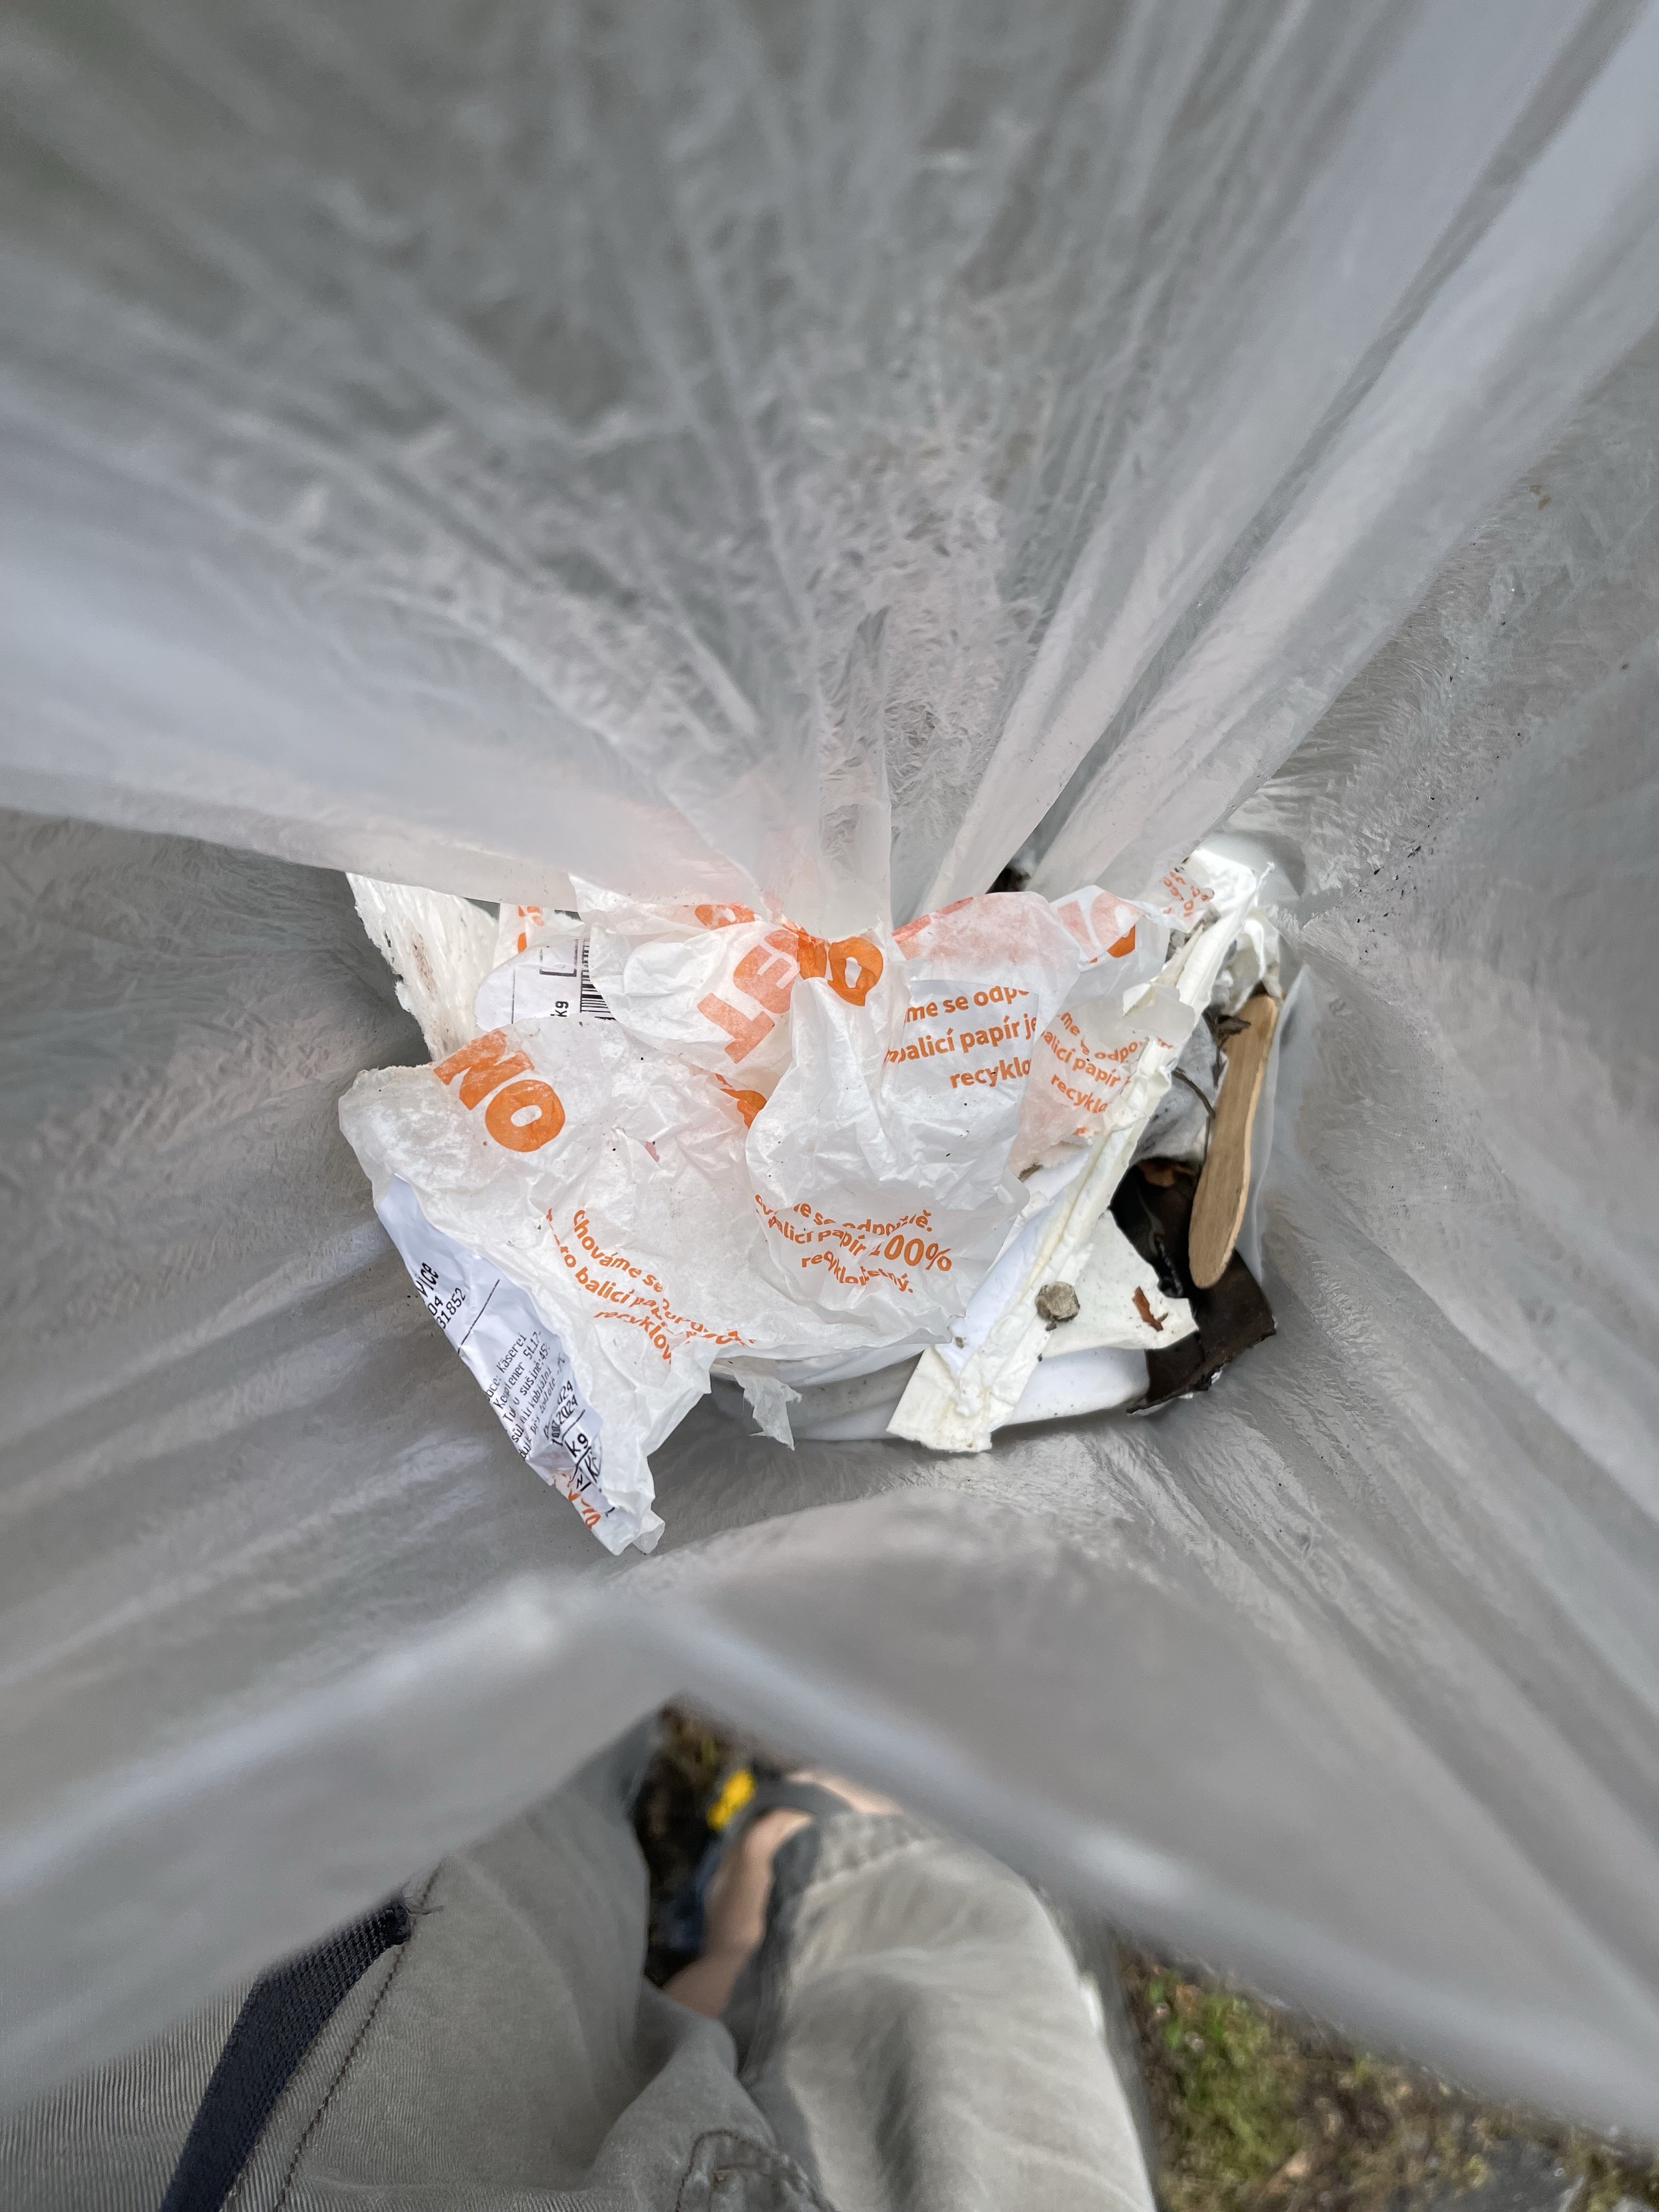 Ein teilweise gefüllter Müllsack mit zerknitterten Papieren und anderem Müll. Das Bild wurde von oben aufgenommen.